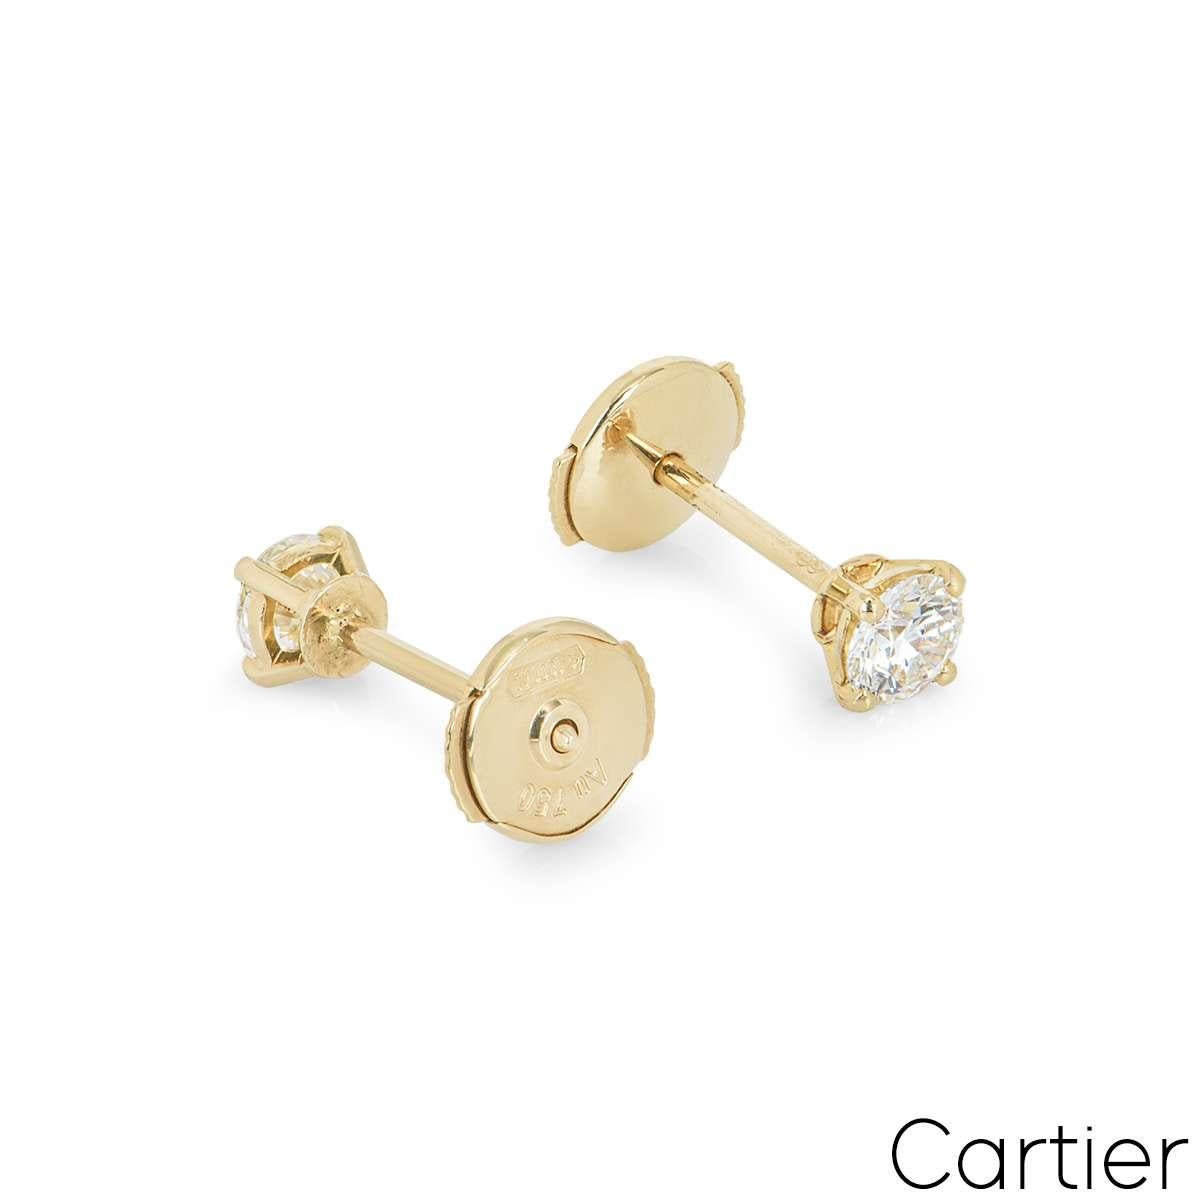 Cartier Yellow Gold Diamond Stud Earrings 0.46ct G/VVS1 GIA Certified 4